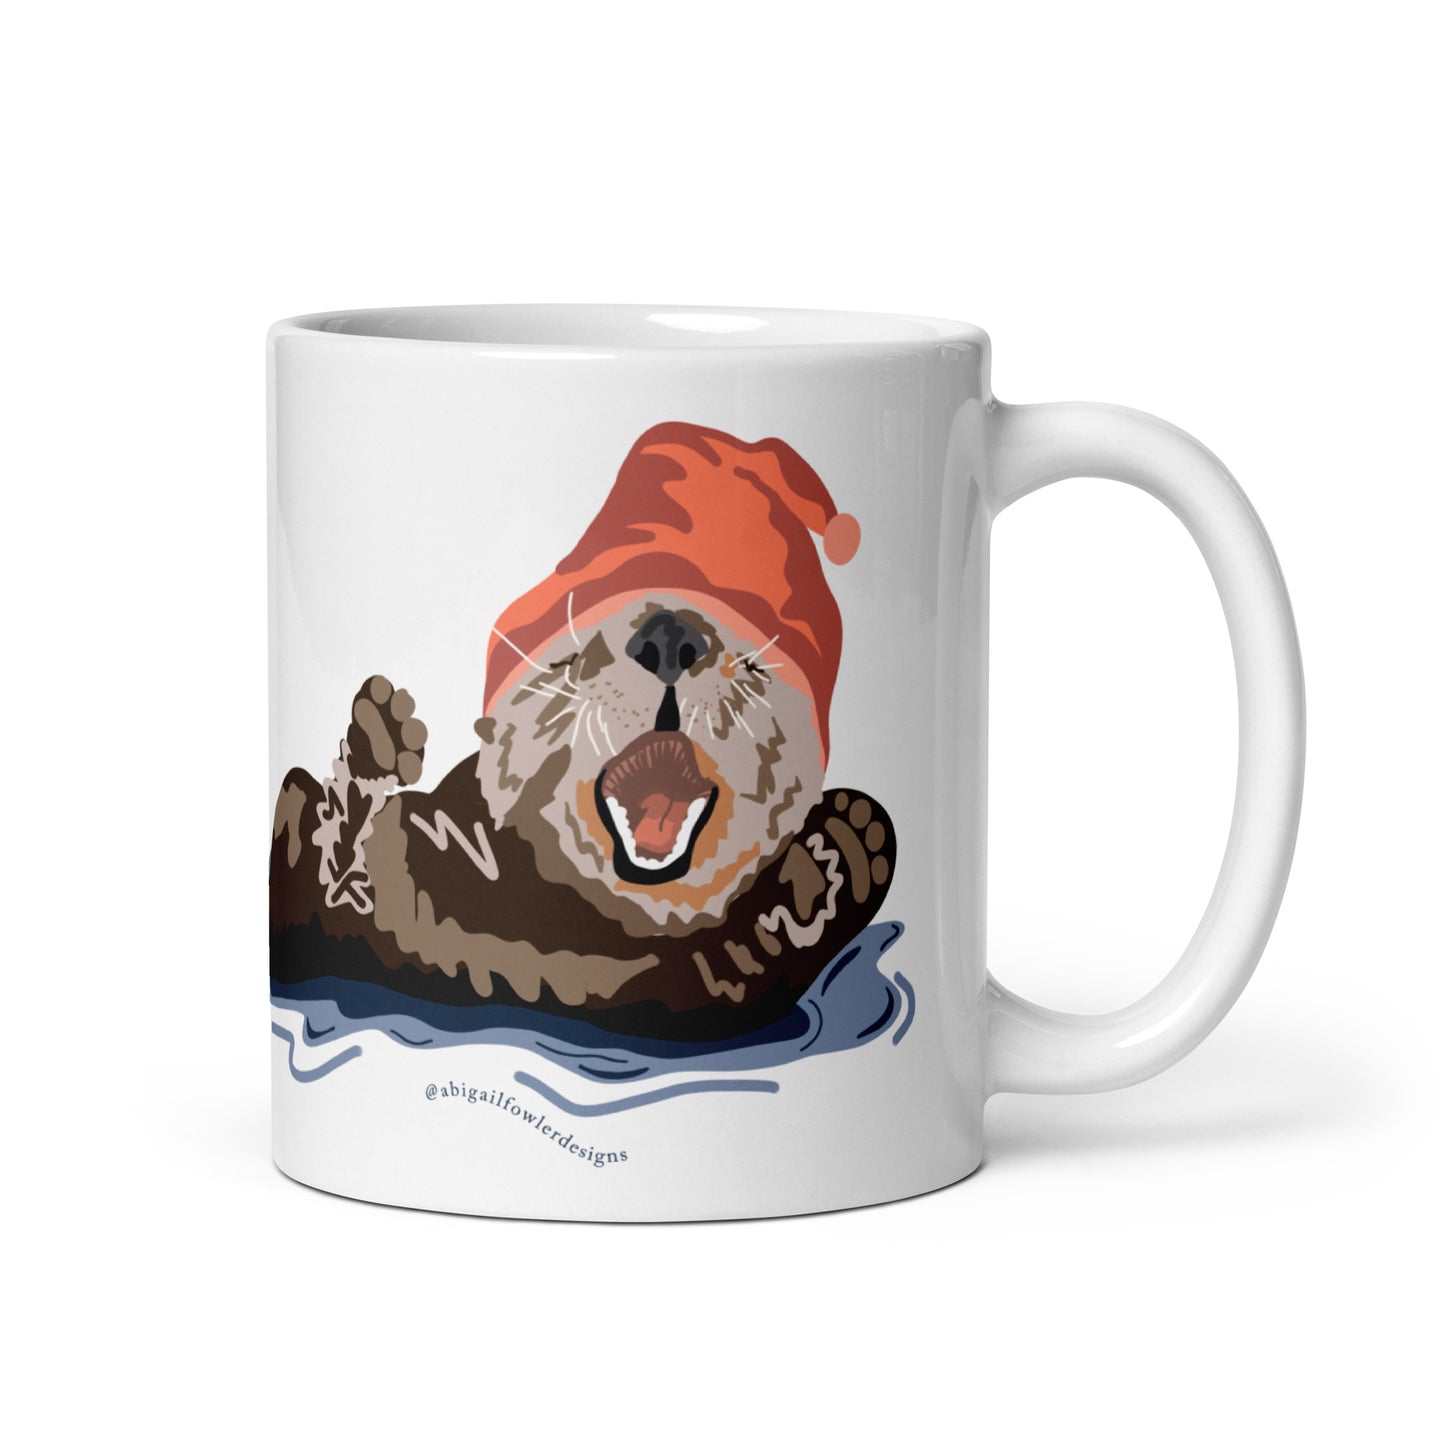 Sleepy Otter White glossy mug